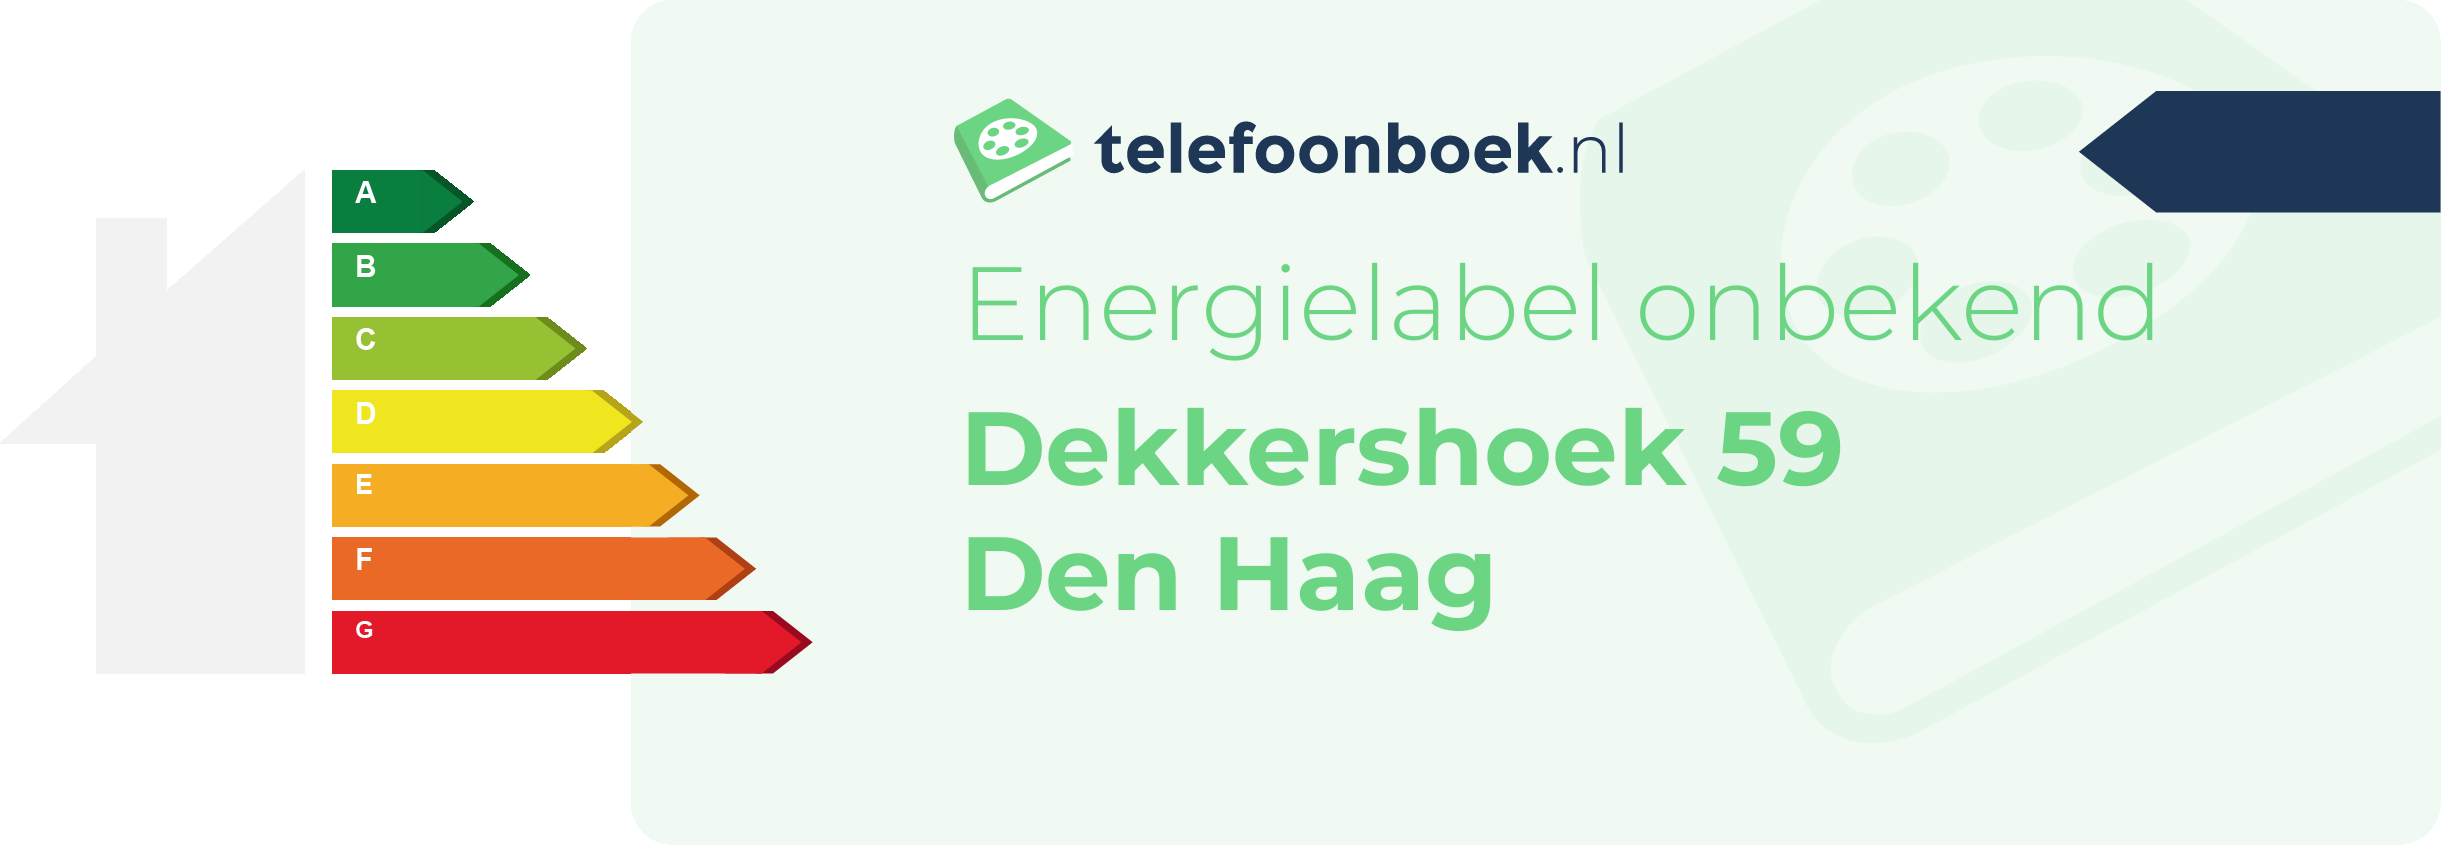 Energielabel Dekkershoek 59 Den Haag